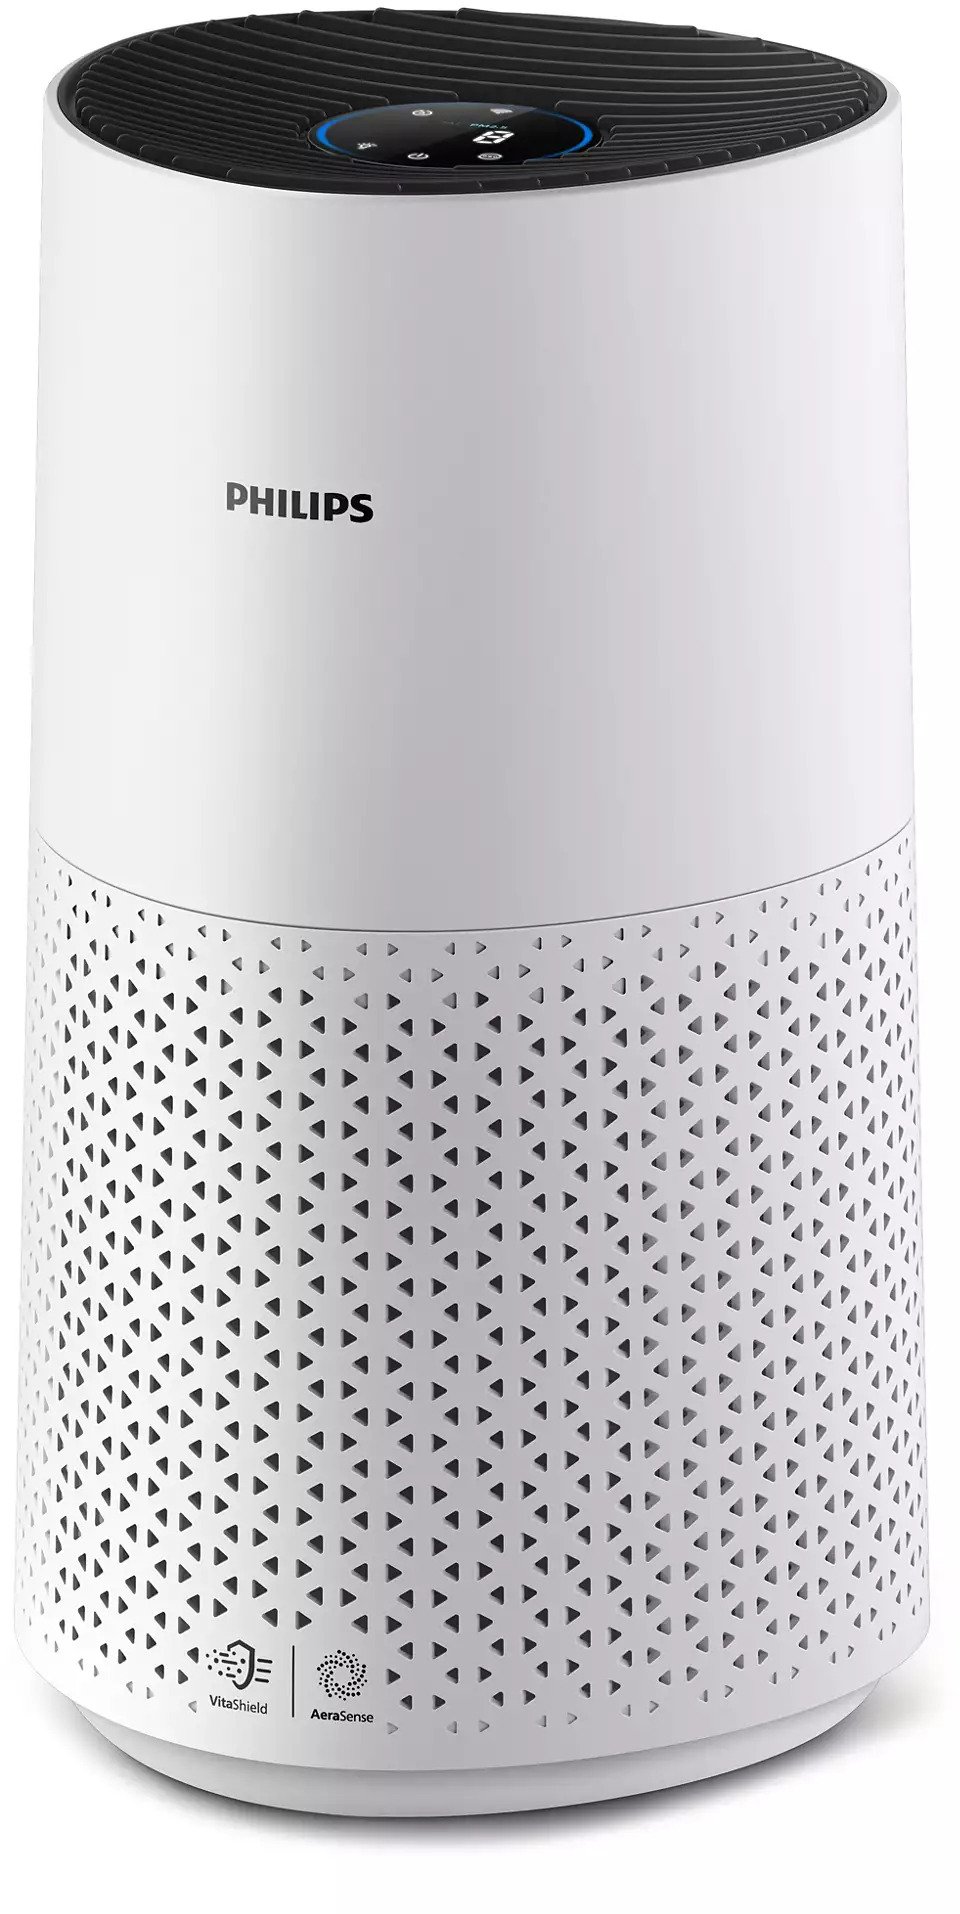 Инструкция очиститель воздуха philips с hepa фильтром Philips AC1715/10